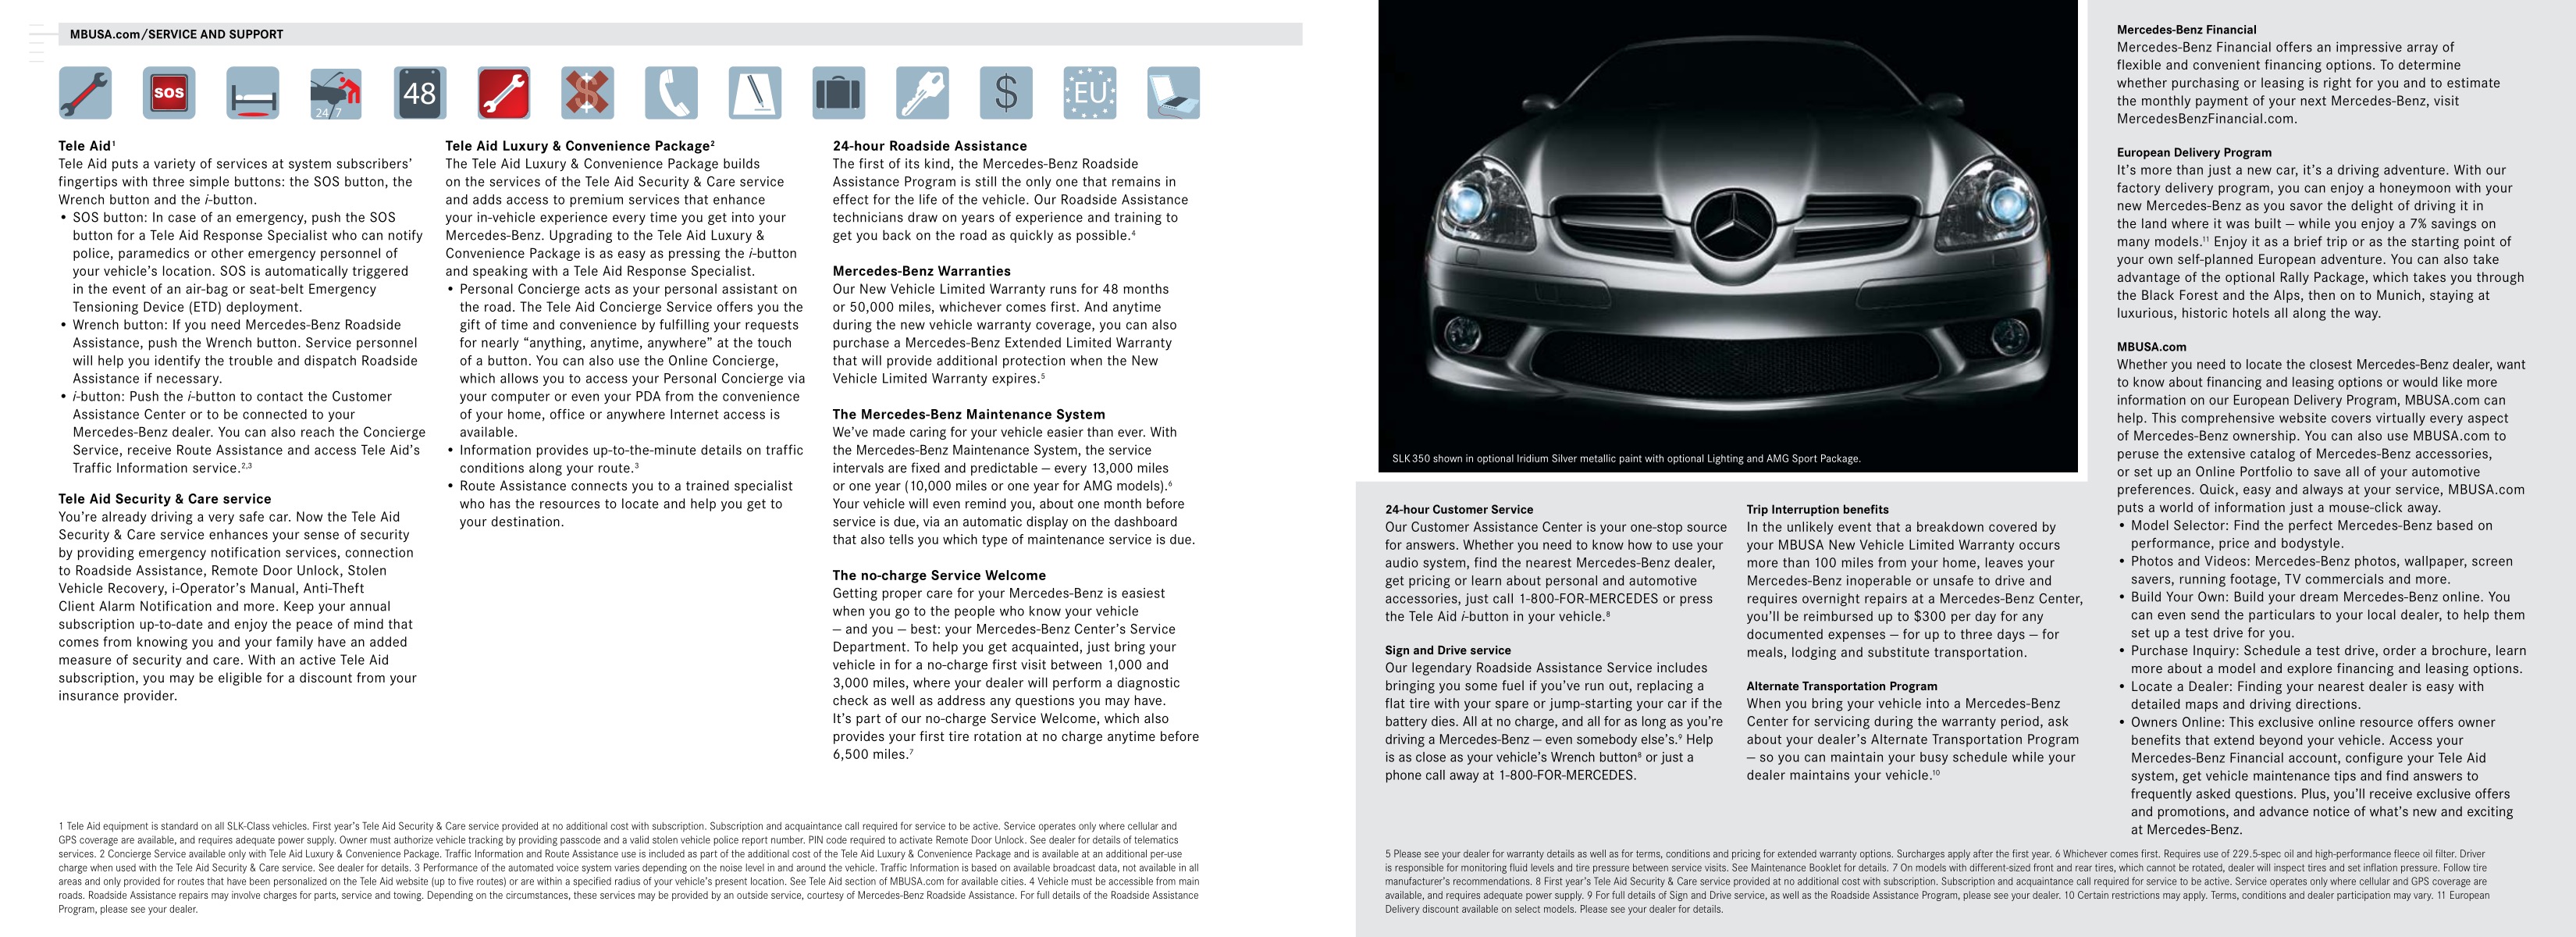 2007 Mercedes-Benz SLK Brochure Page 5